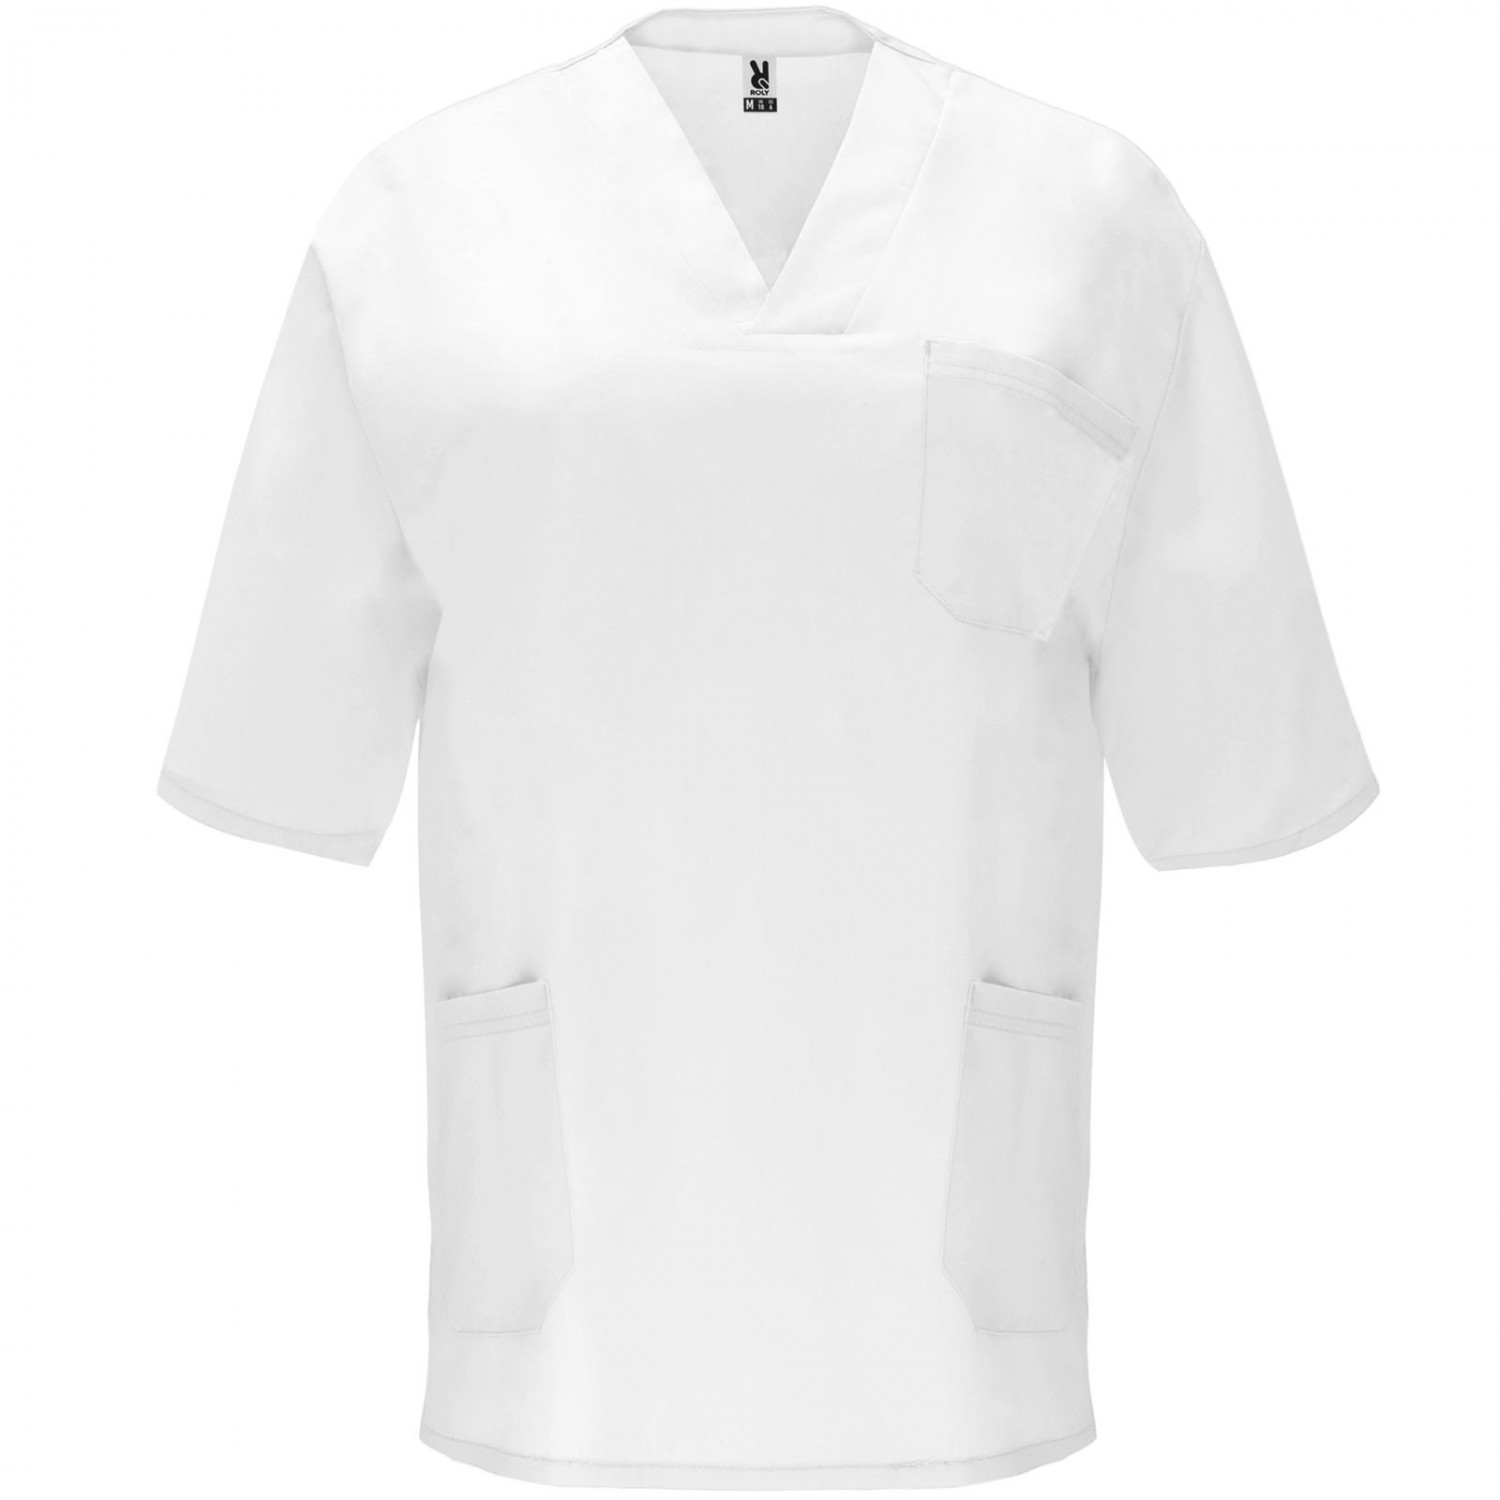 Schlupfkasack Medizin Pflege Unisex Hemd Jacke (Farbe: weiß Größe: M)